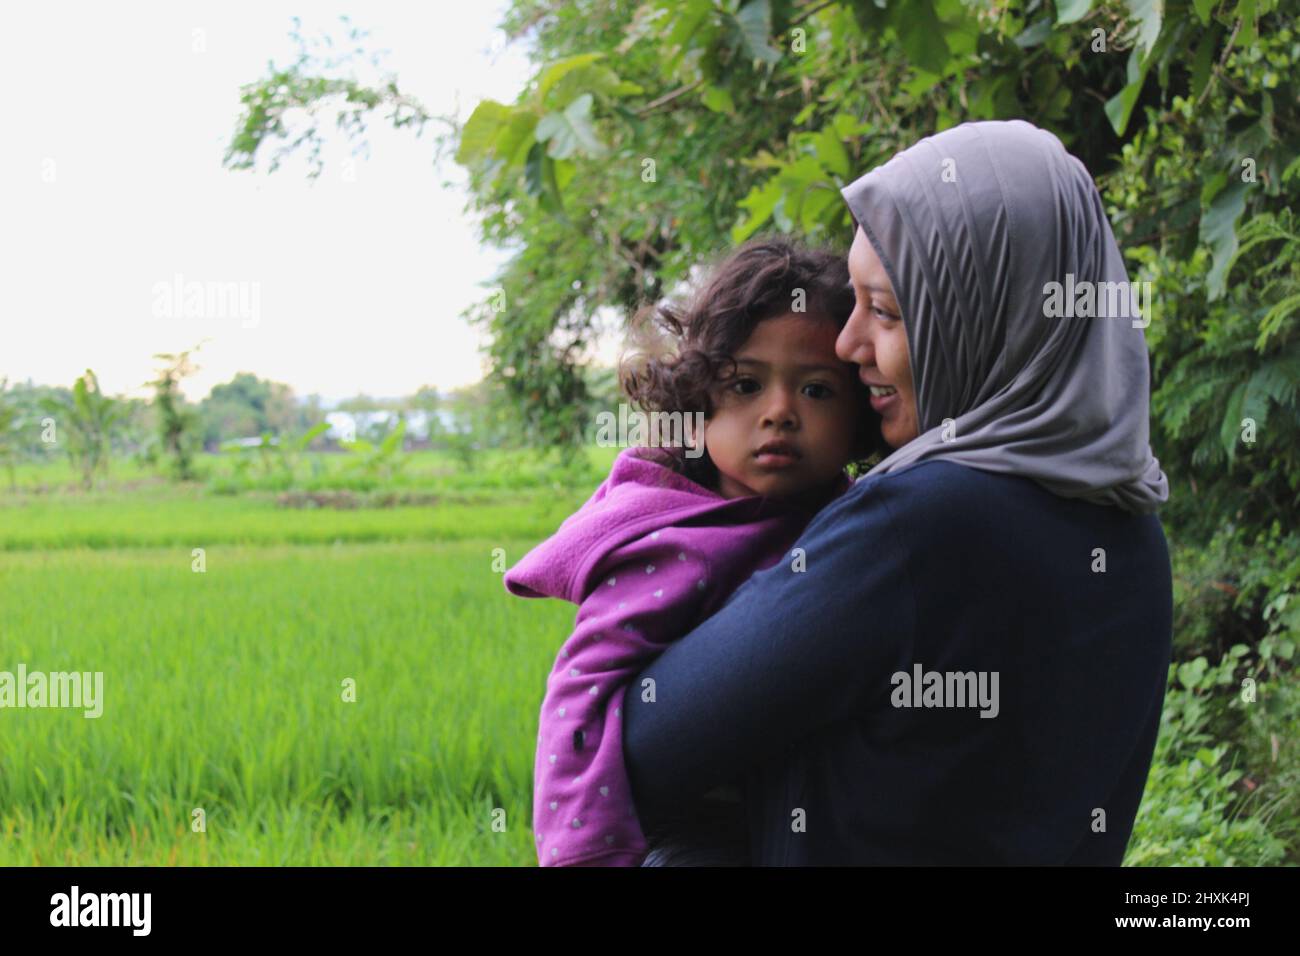 Java, Indonésie - 12 24 2020: Une vue d'arrière-plan floue des champs de riz et une femme dans un hijab tenant une fille semble heureuse Banque D'Images